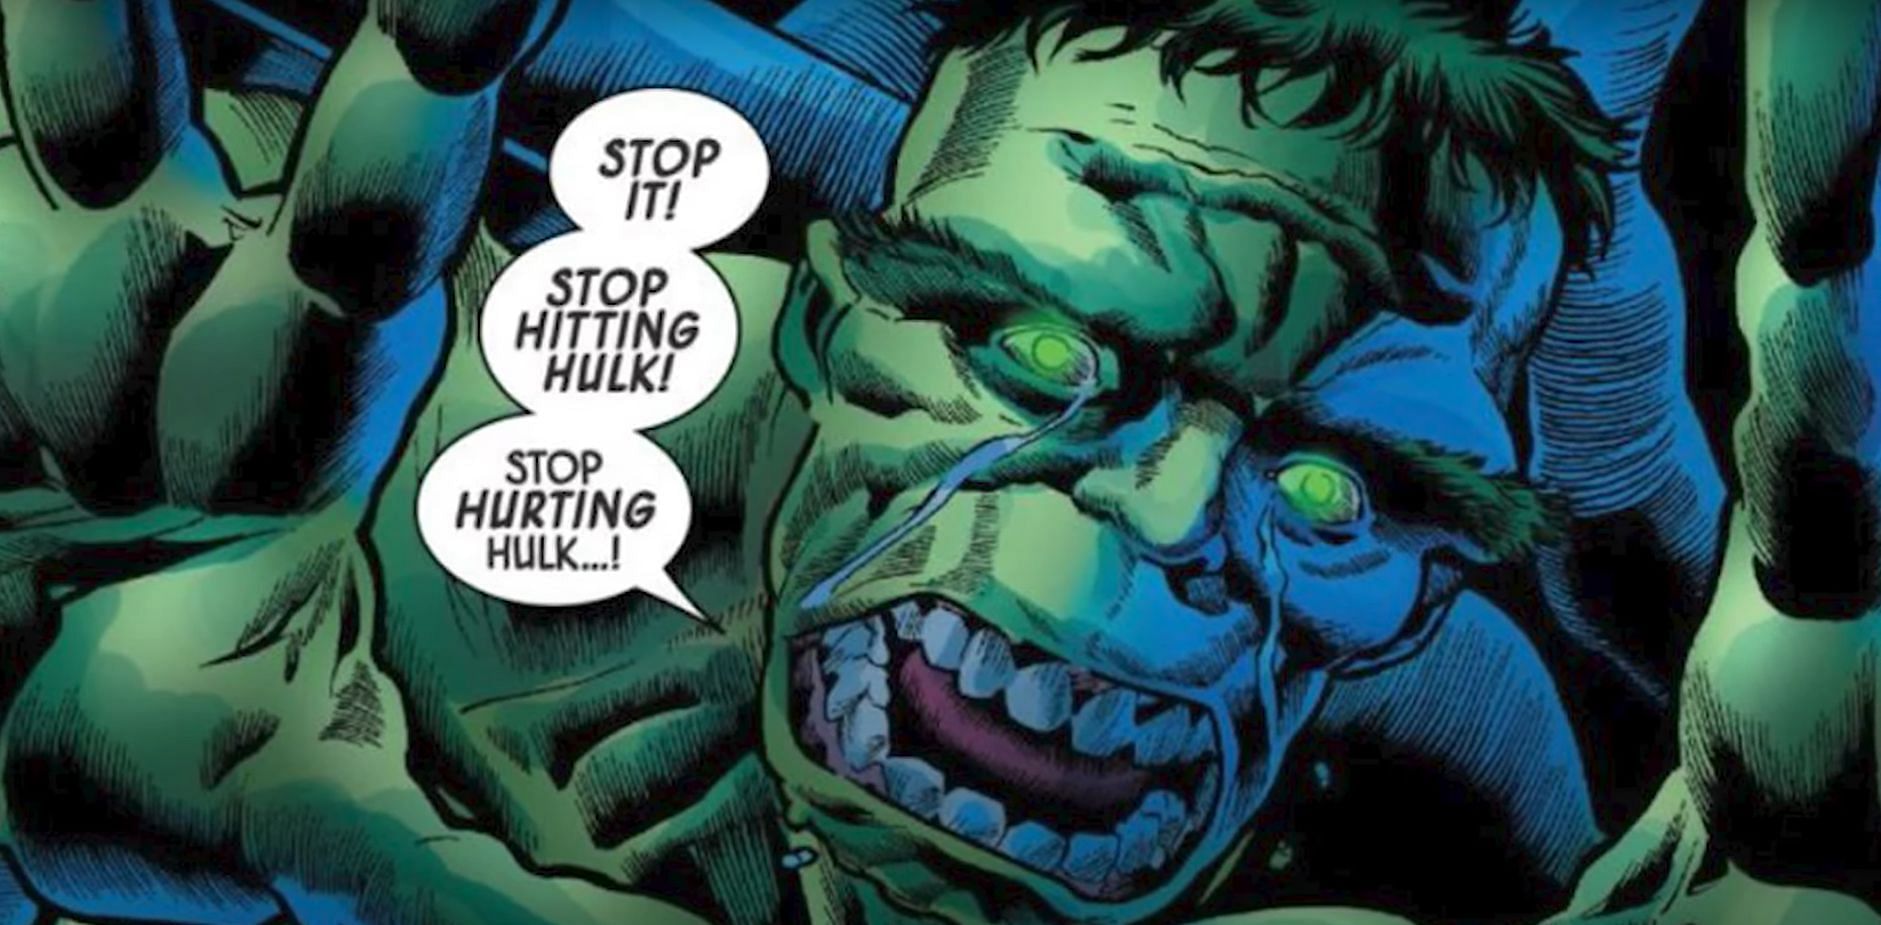 Hulk (Image via Marvel)